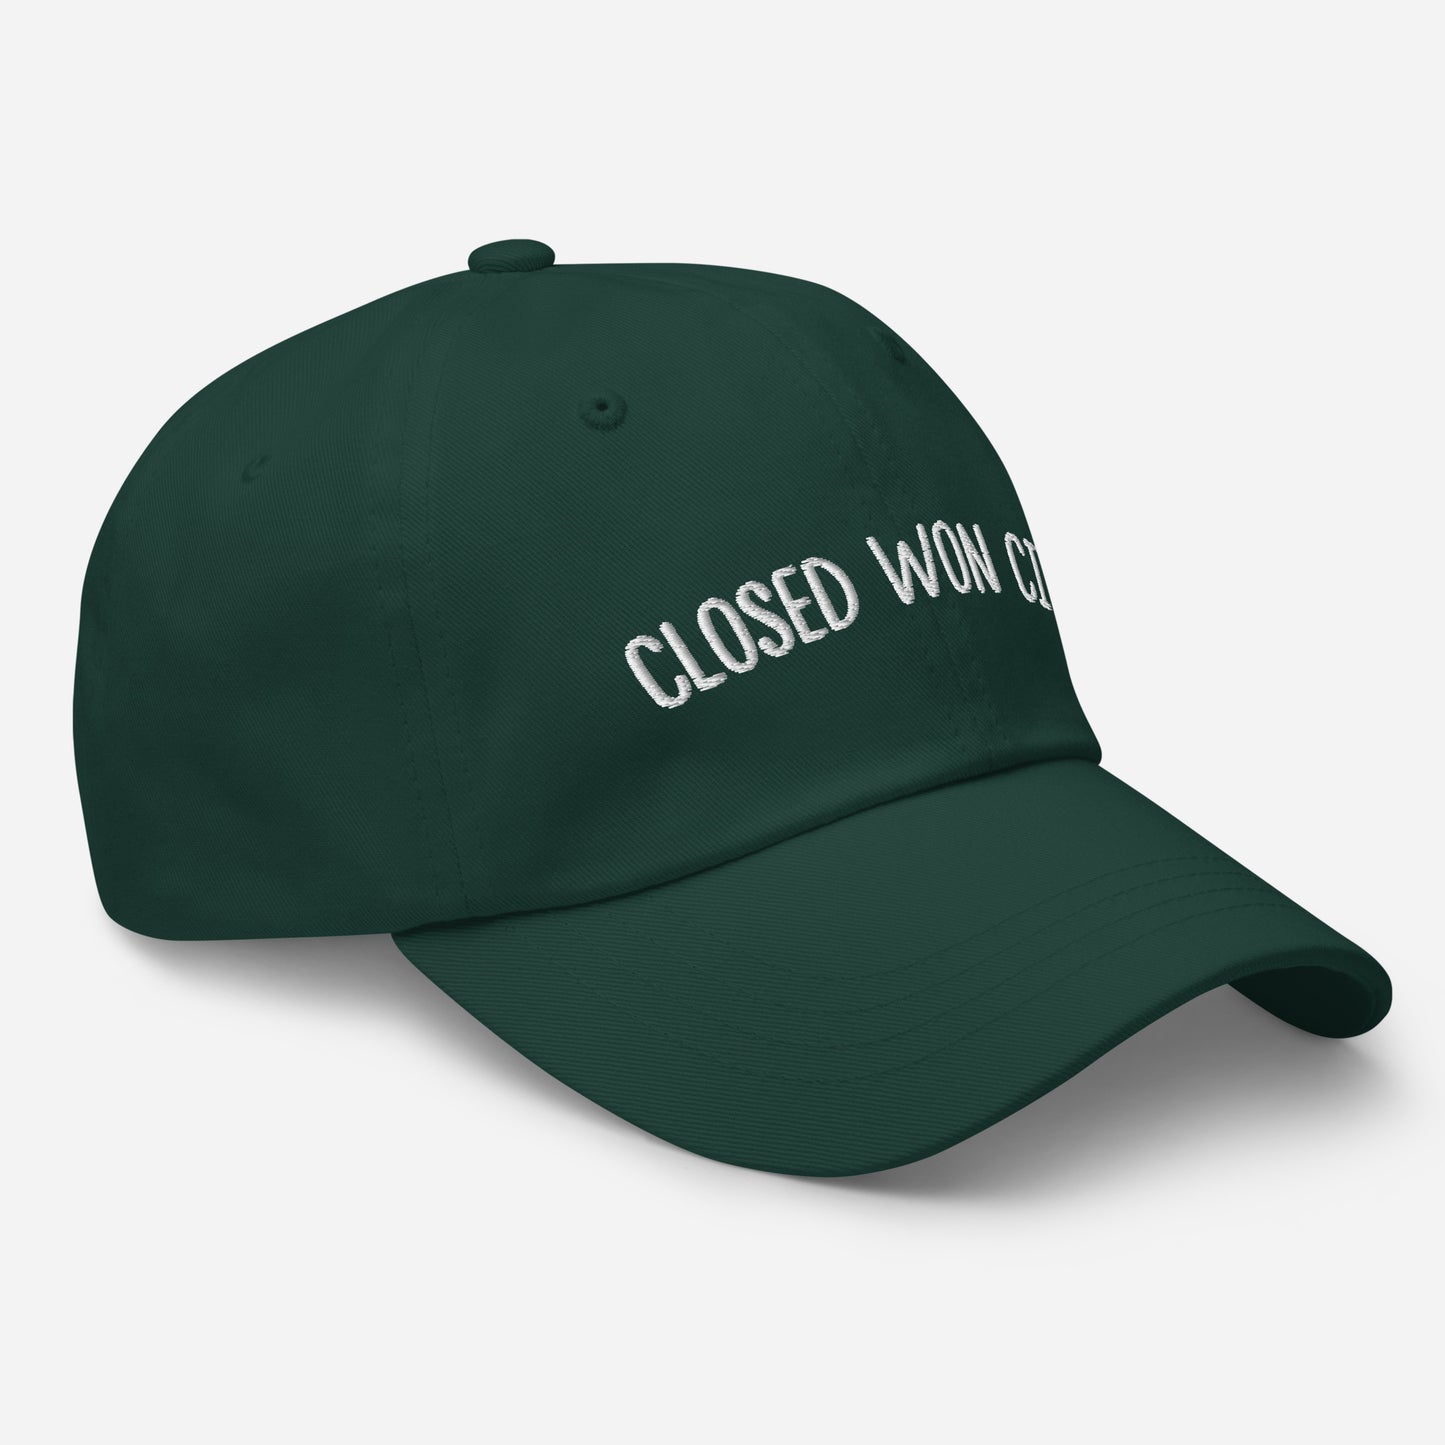 Closed Won City Dad hat